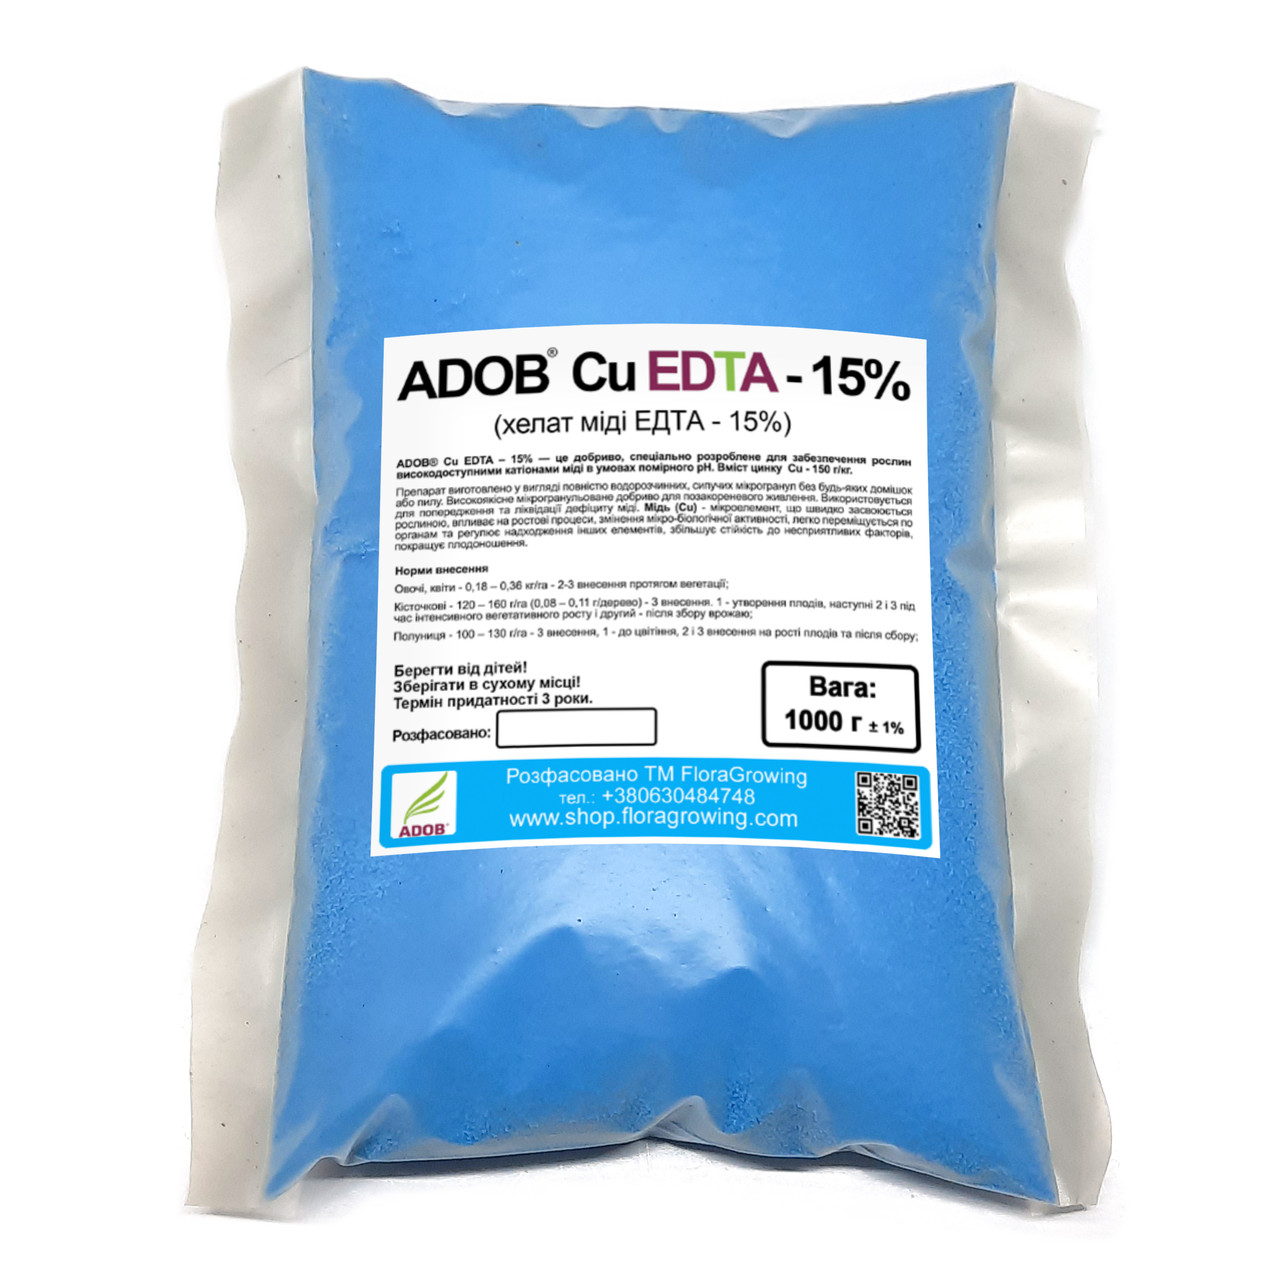 1 кг Хелат міді (Cu-EDTA 15%) - ADOB